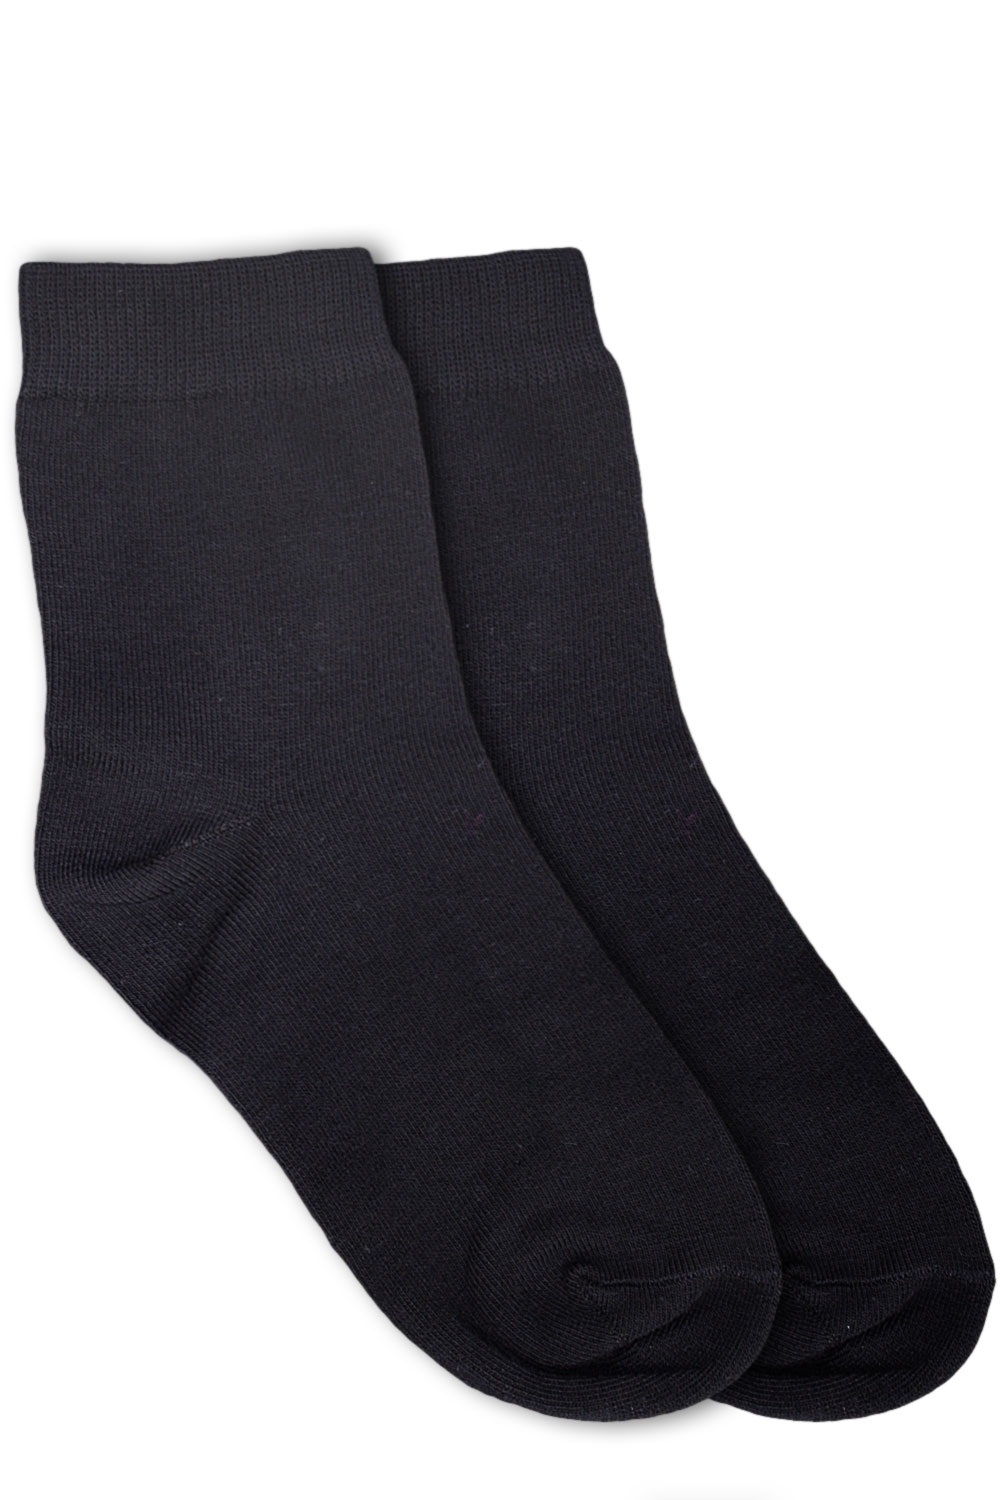 Columbia черный носки короткие